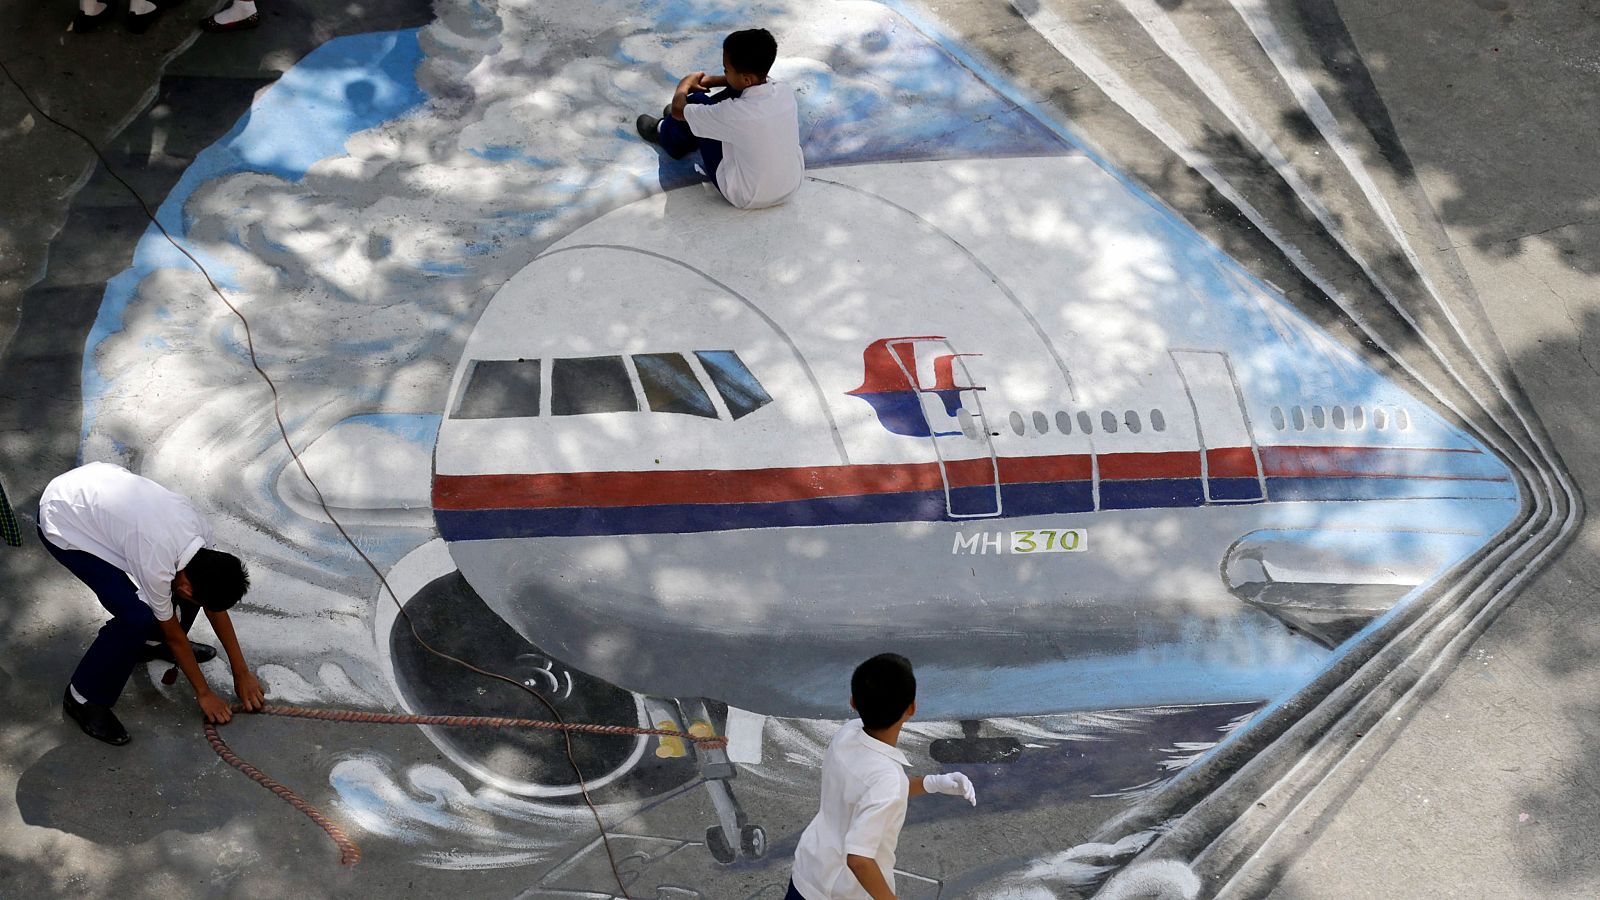 Vuelo MH370 de Malaysia Airlines: 10 años de la desaparición.